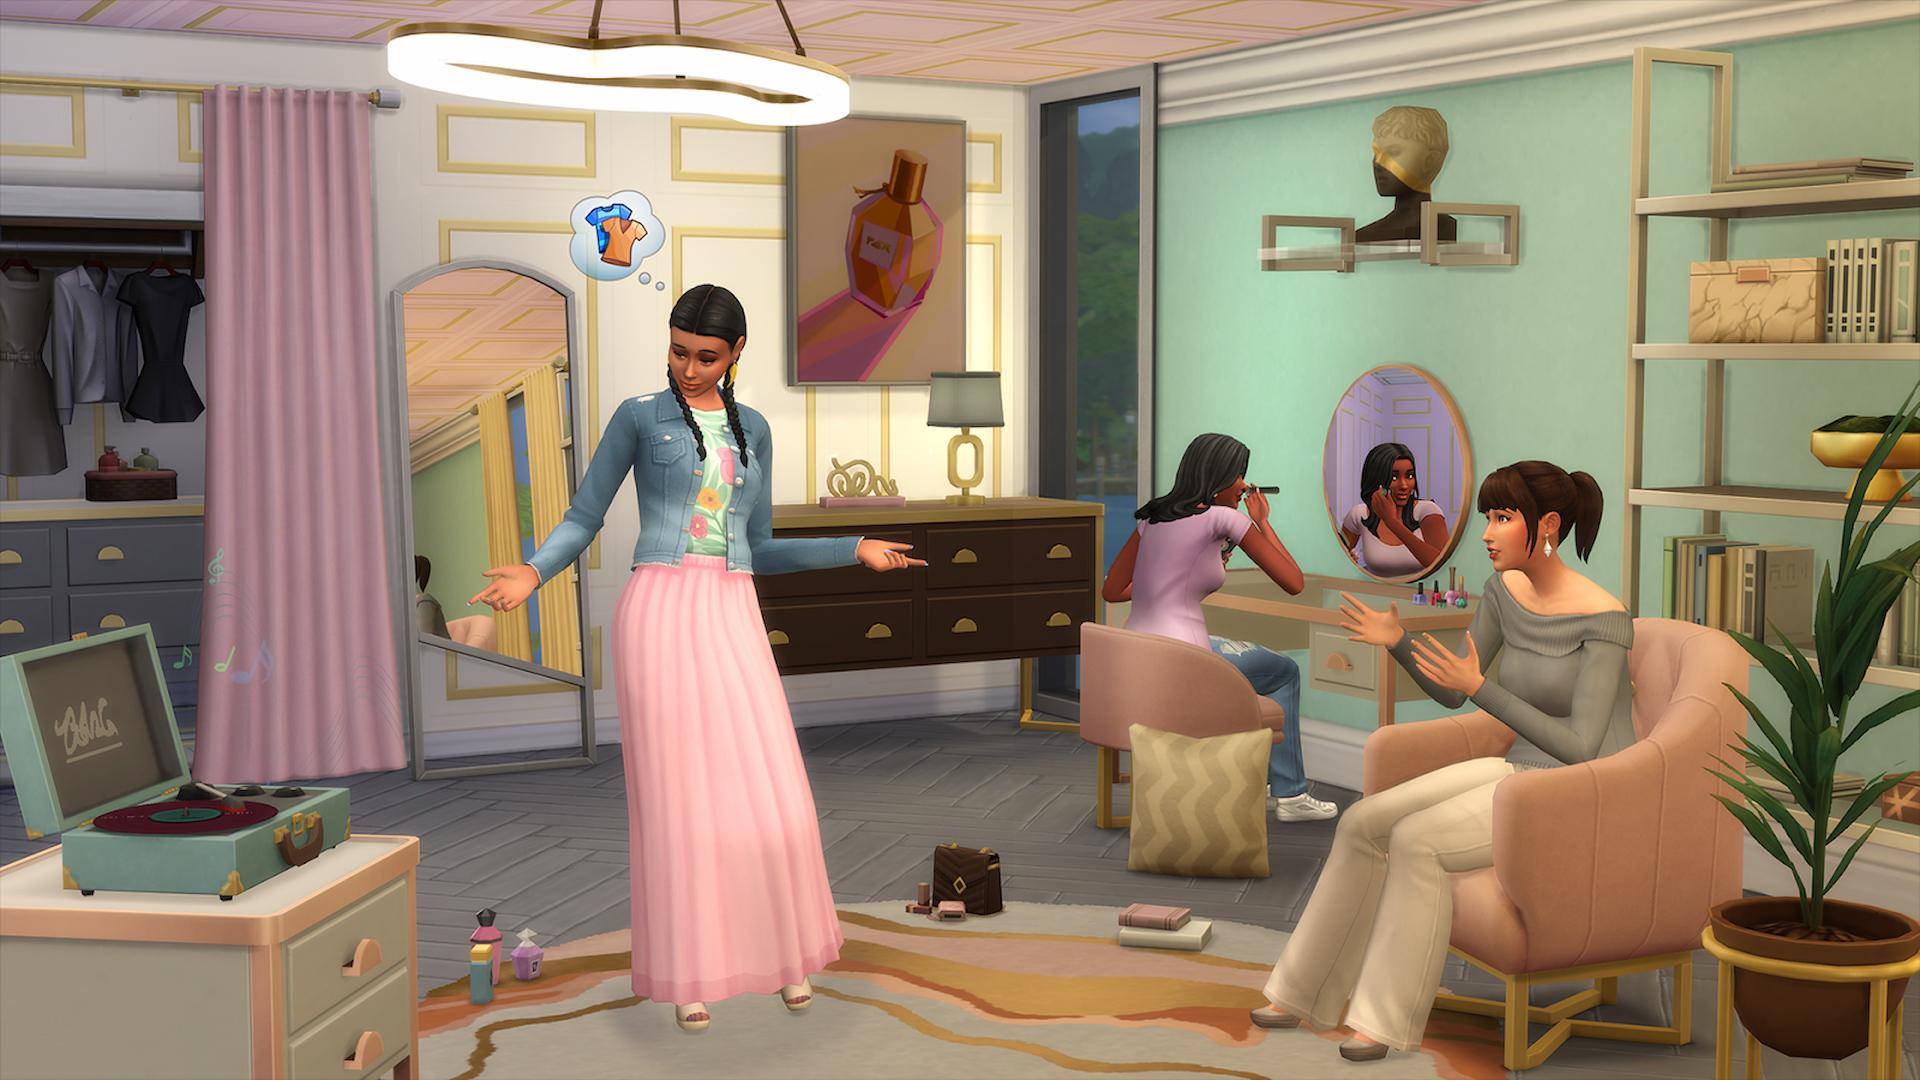 Sims 4 Captura de pantalla moderna del kit de lujo que muestra a Sims en una boutique, probando ropa y maquillado